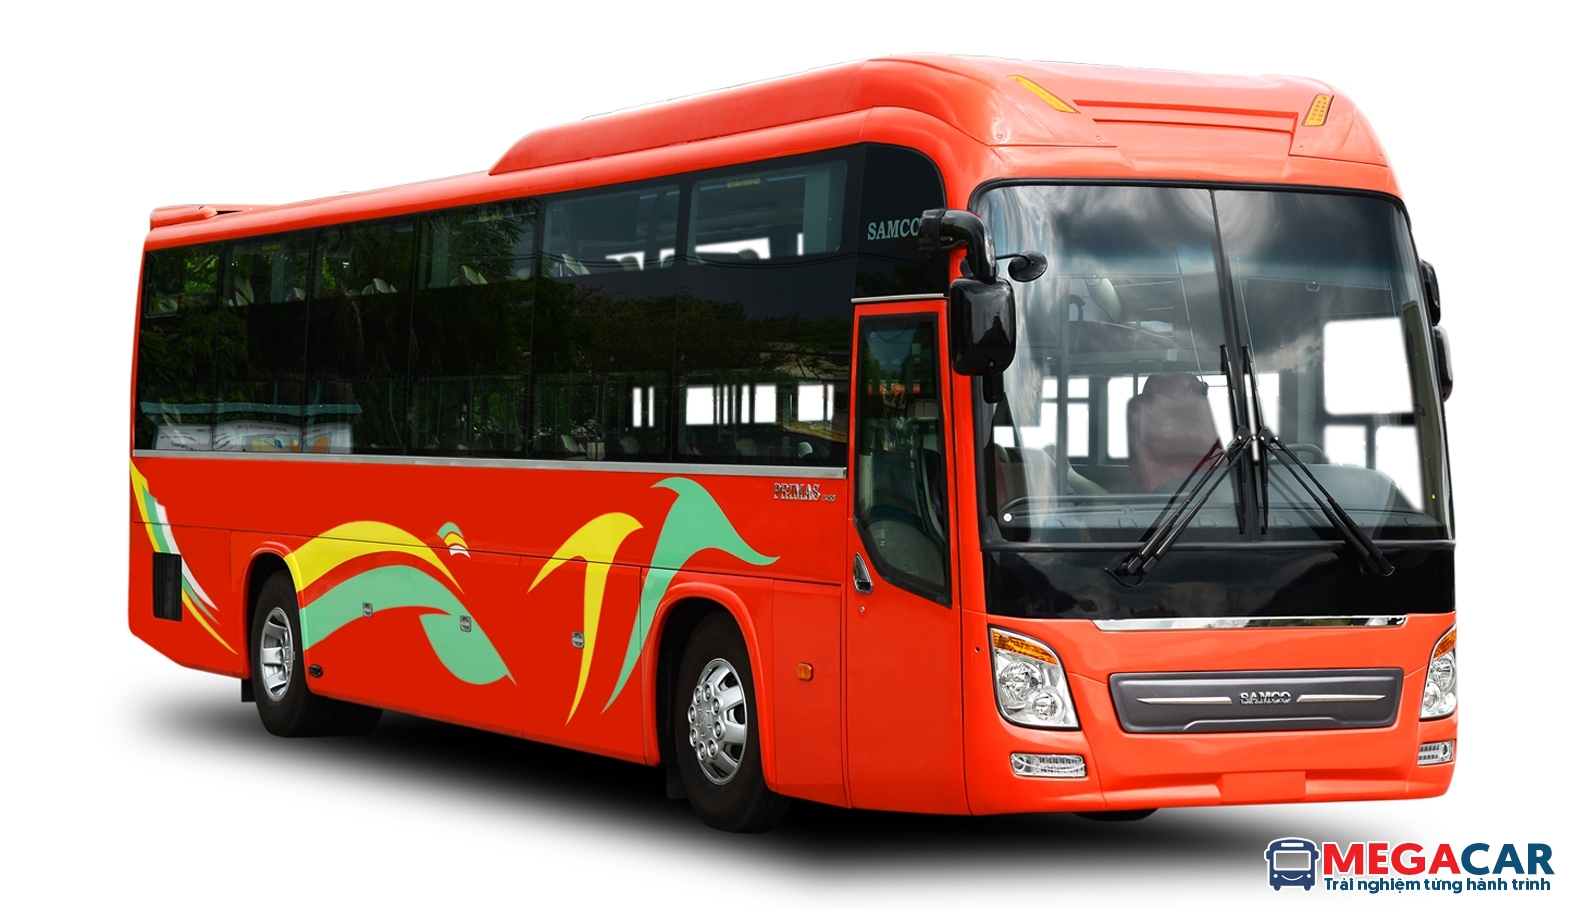 Danh sách xe khách Quảng Ninh đi Phú Thọ cập nhật mới nhất - Megacar - Tổng đài đặt Xe Limousine và Xe giường nằm toàn quốc